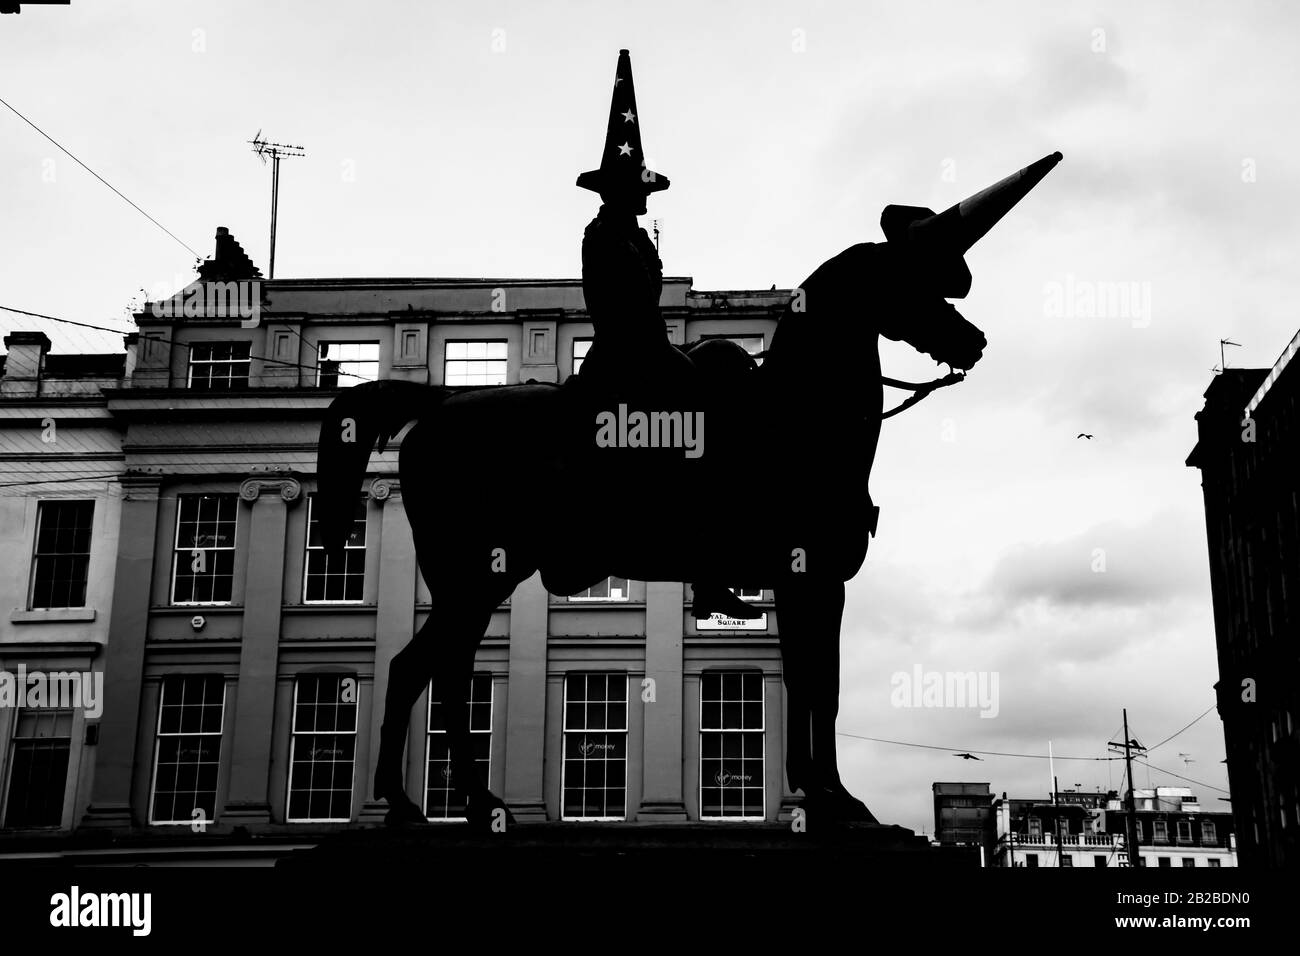 Silhouette della statua del Duca di Wellington nel centro di Glasgow con un cono pro-Unione europea che sostituisce il tradizionale cono di traffico sulla sua testa Foto Stock